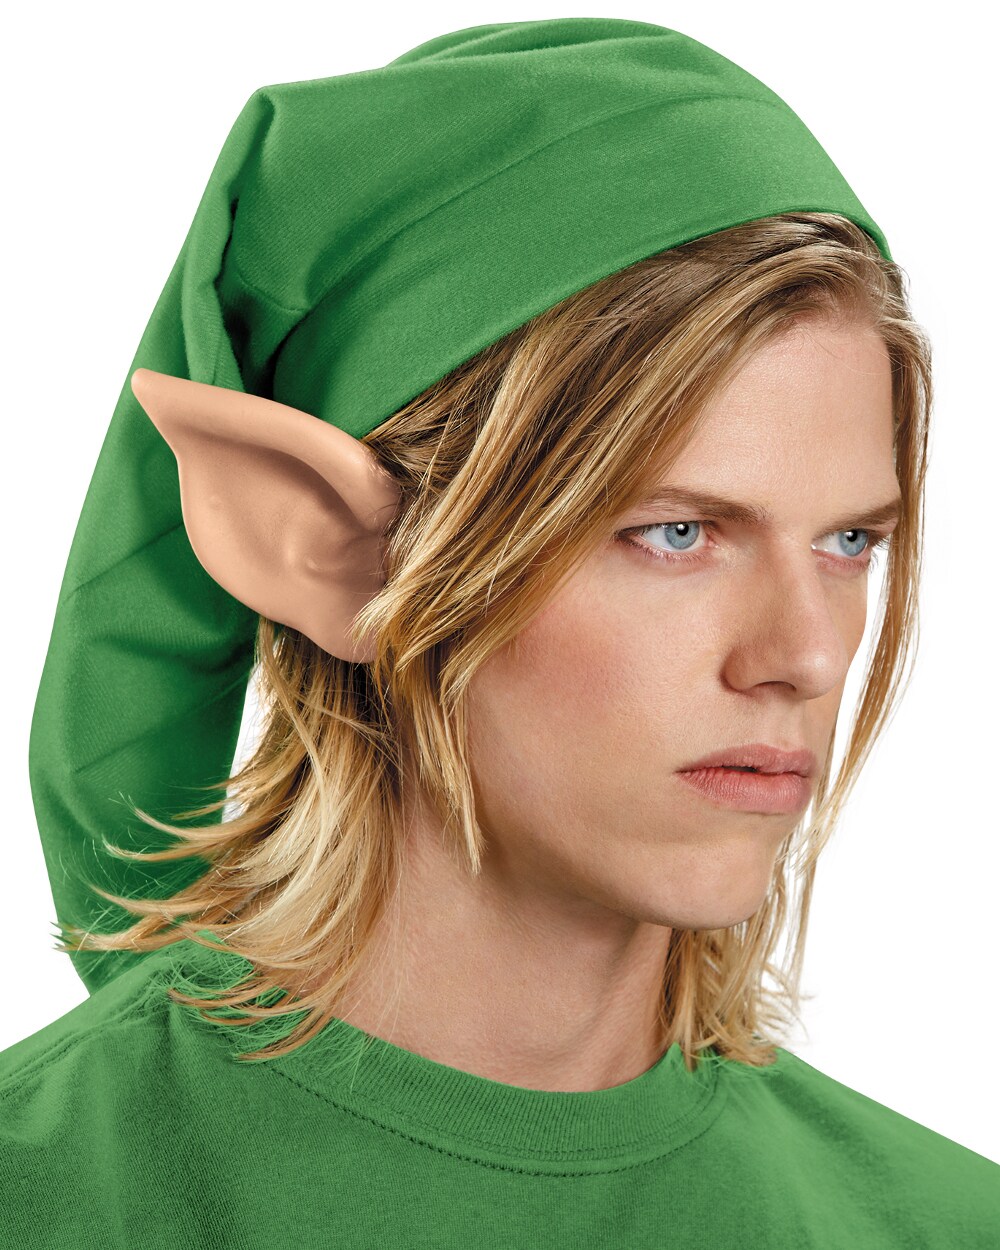 Kids Link Costume - The Legend of Zelda